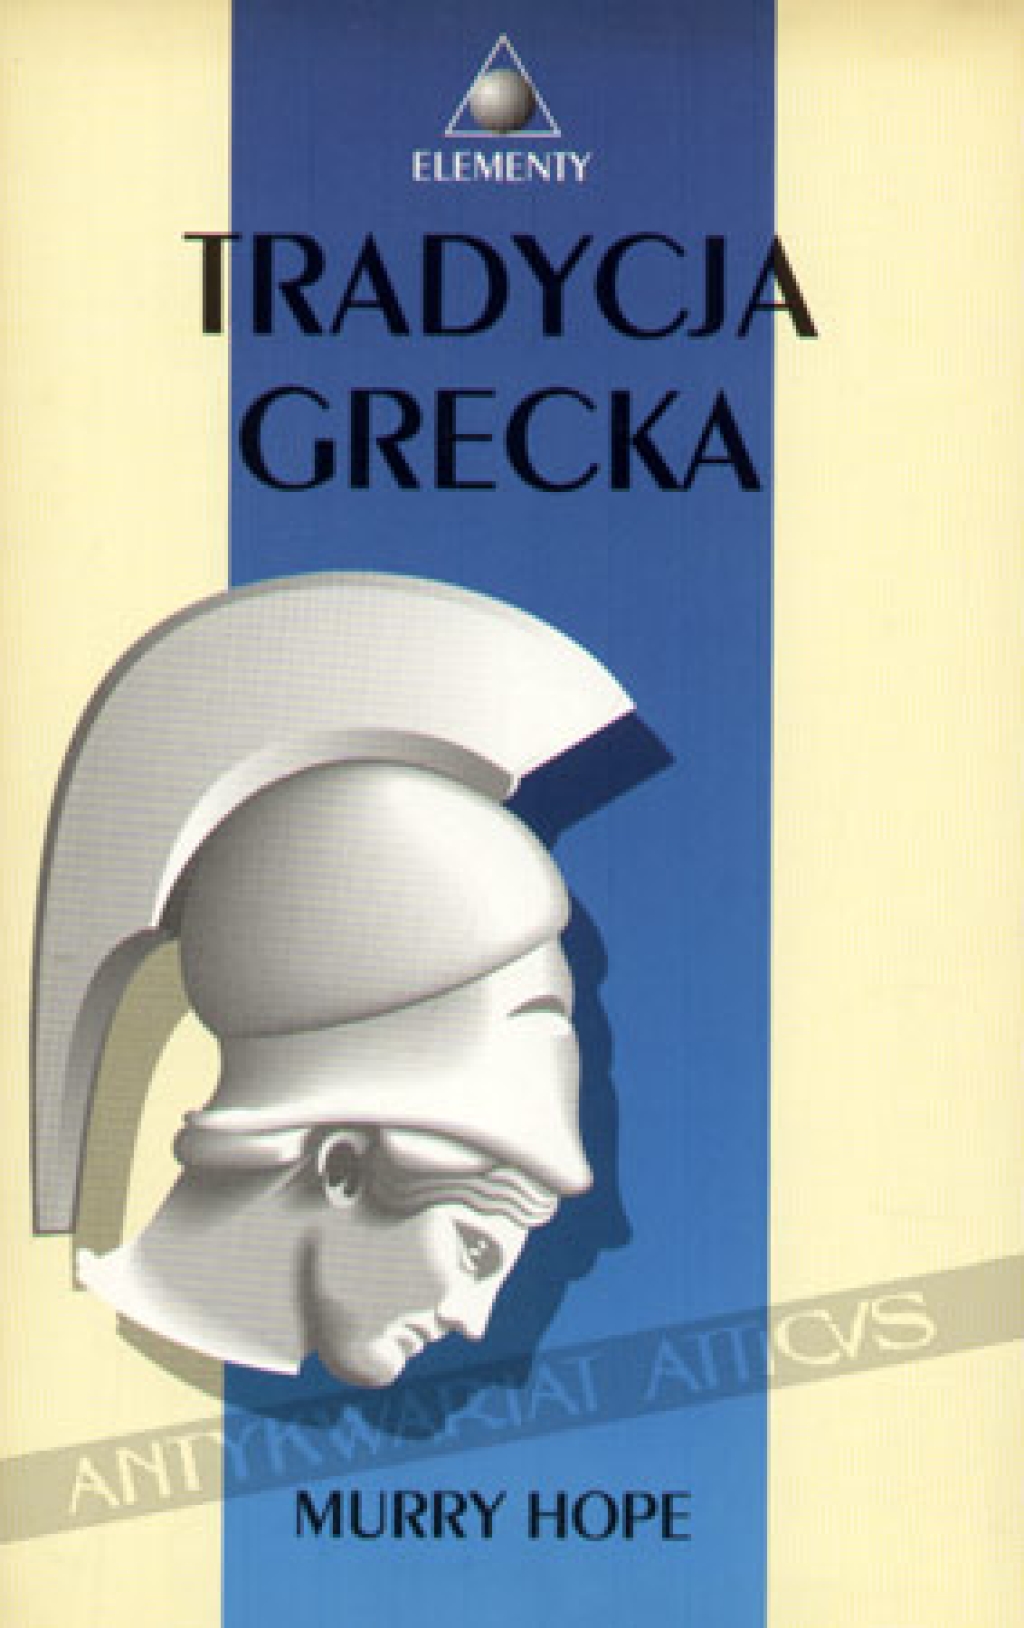 Tradycja grecka